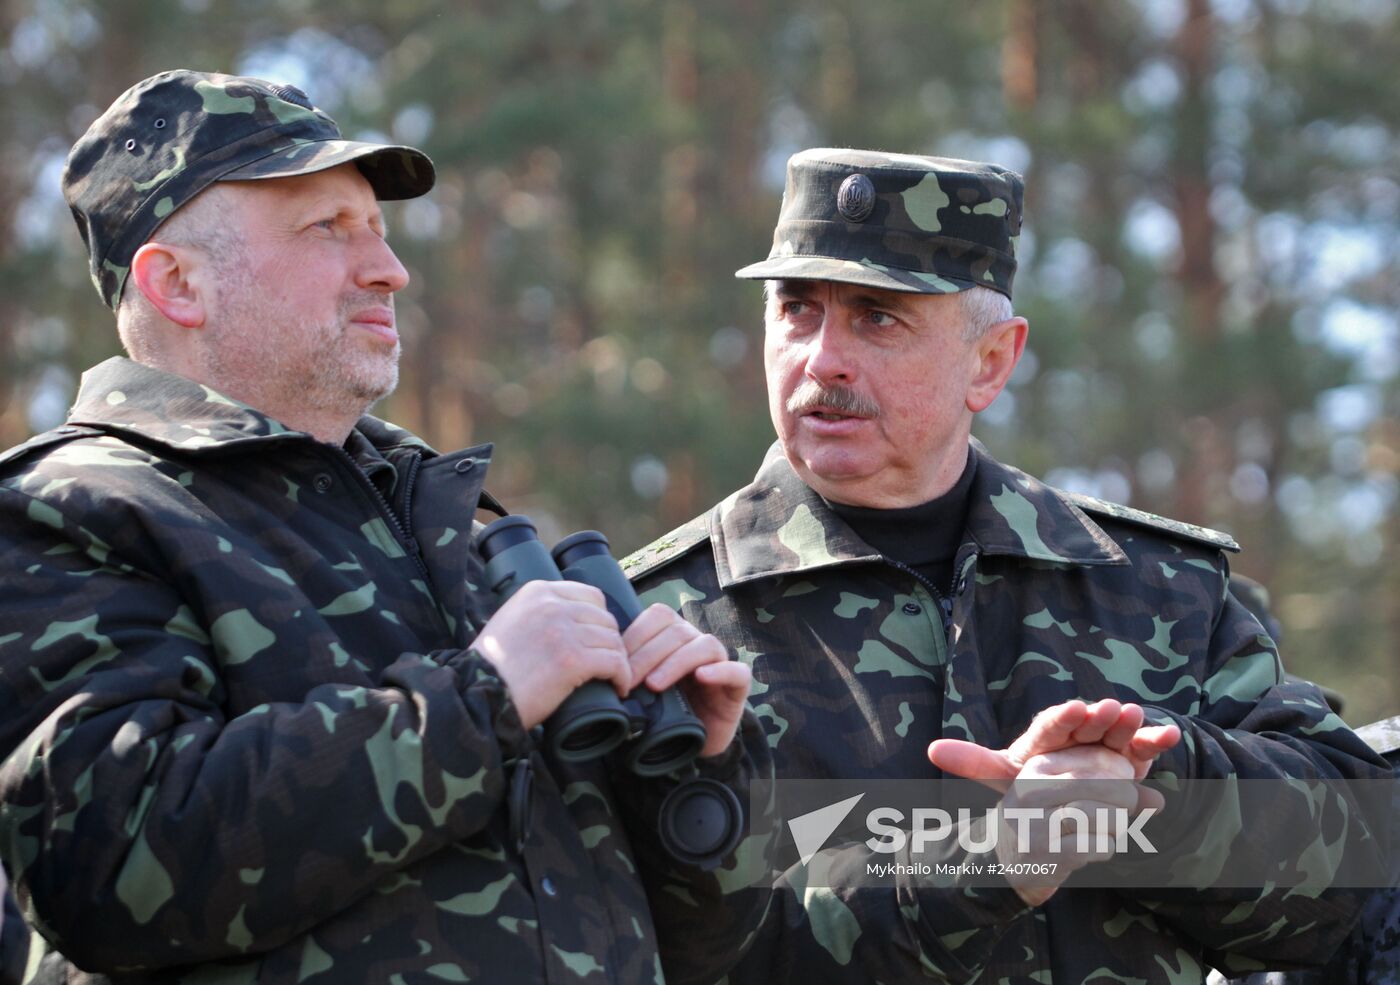 Ukraine holds military exercise in Chernigov Region